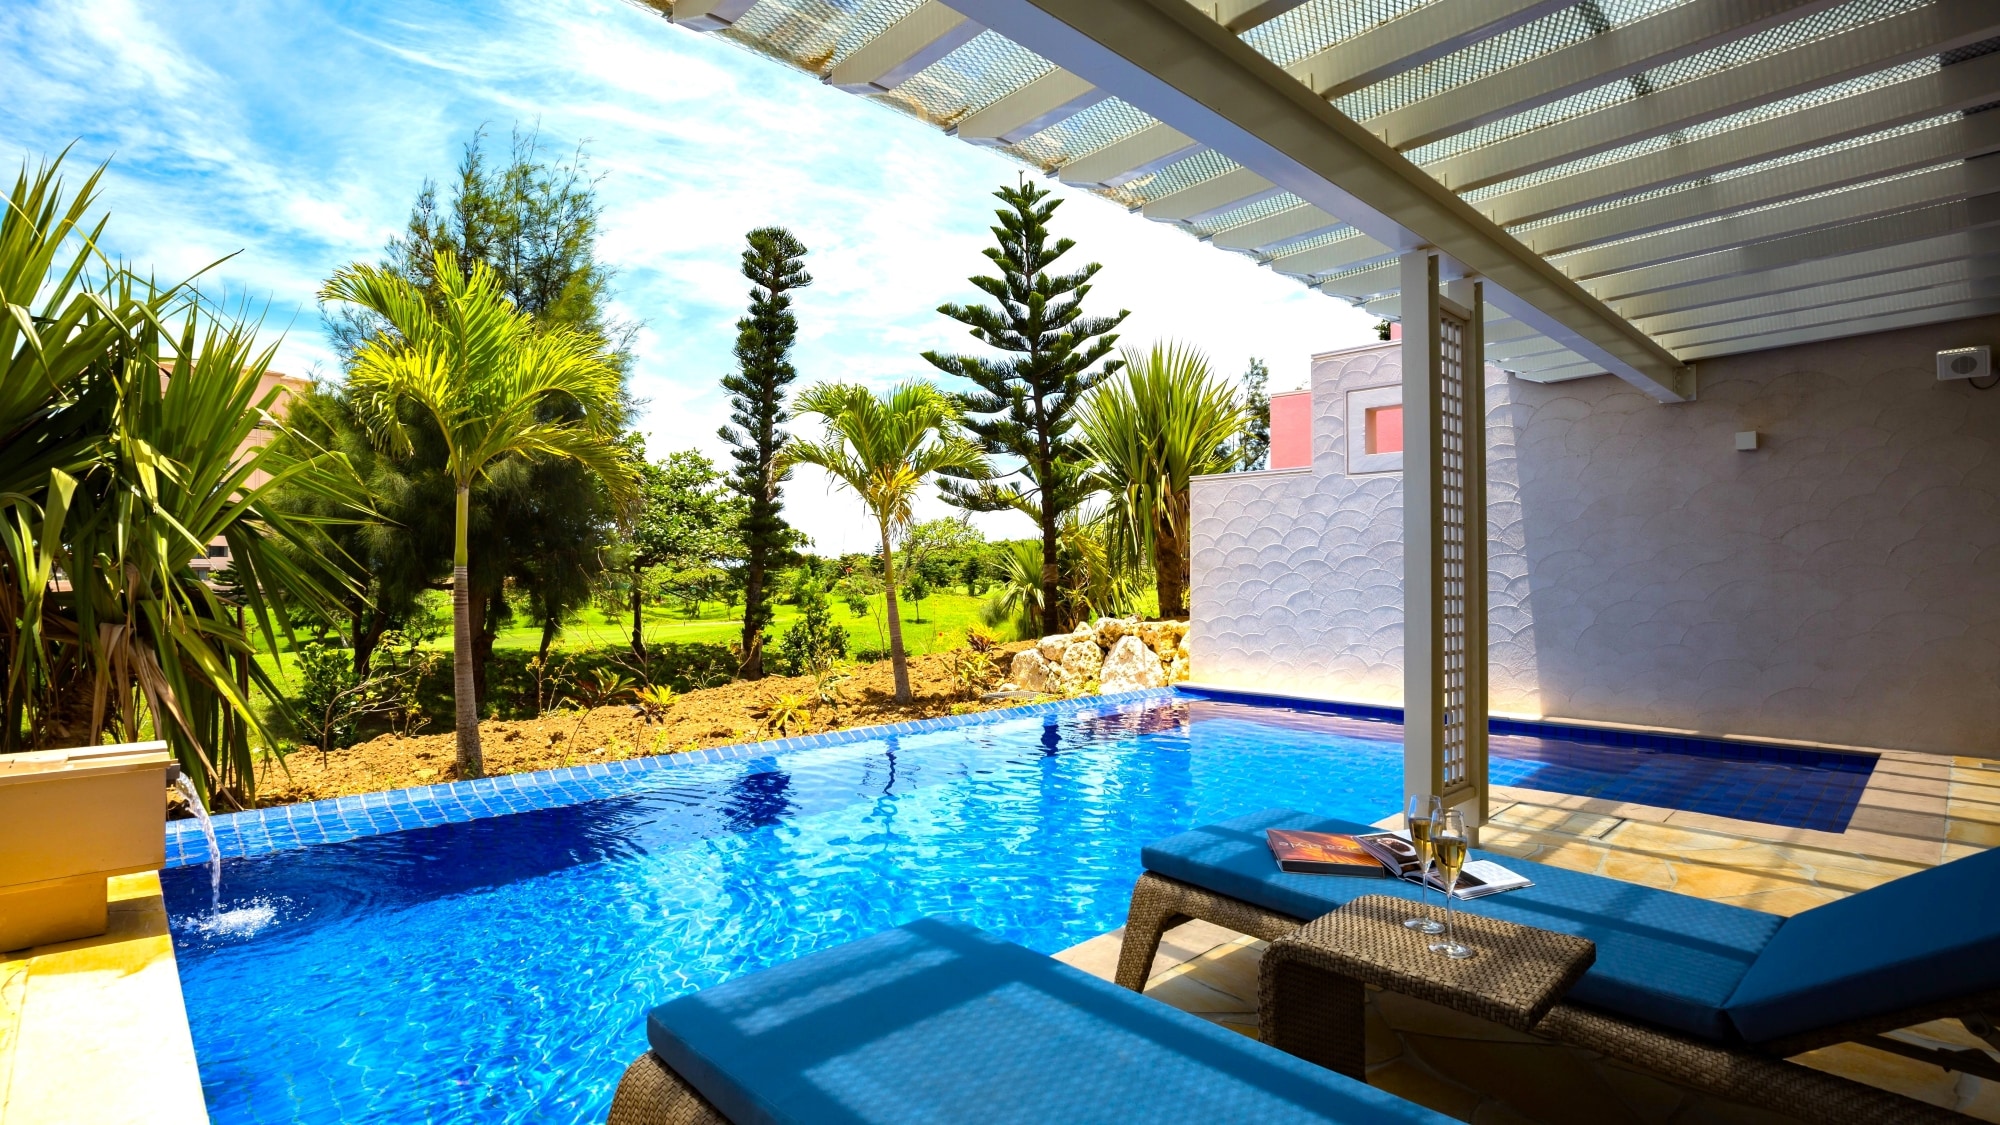 [Pool Villa Premier 1F] Teras dilengkapi dengan kolam renang pribadi dengan permukaan air biru yang mempesona.